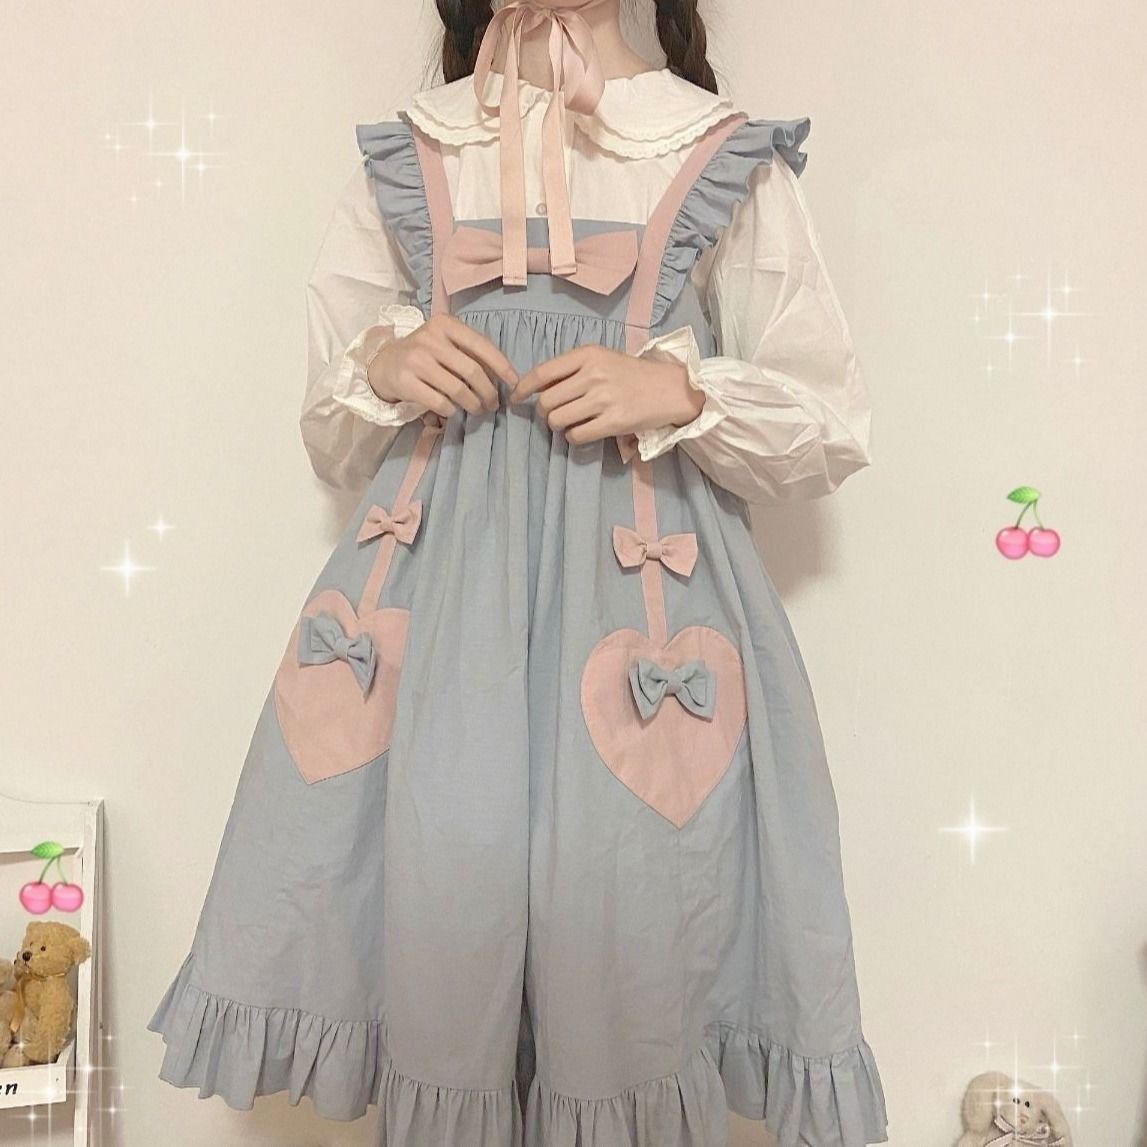 Váy Lolita Nhật Bản, váy vest nữ tính nữ tính, váy bạn gái nữ tính bèo nhún